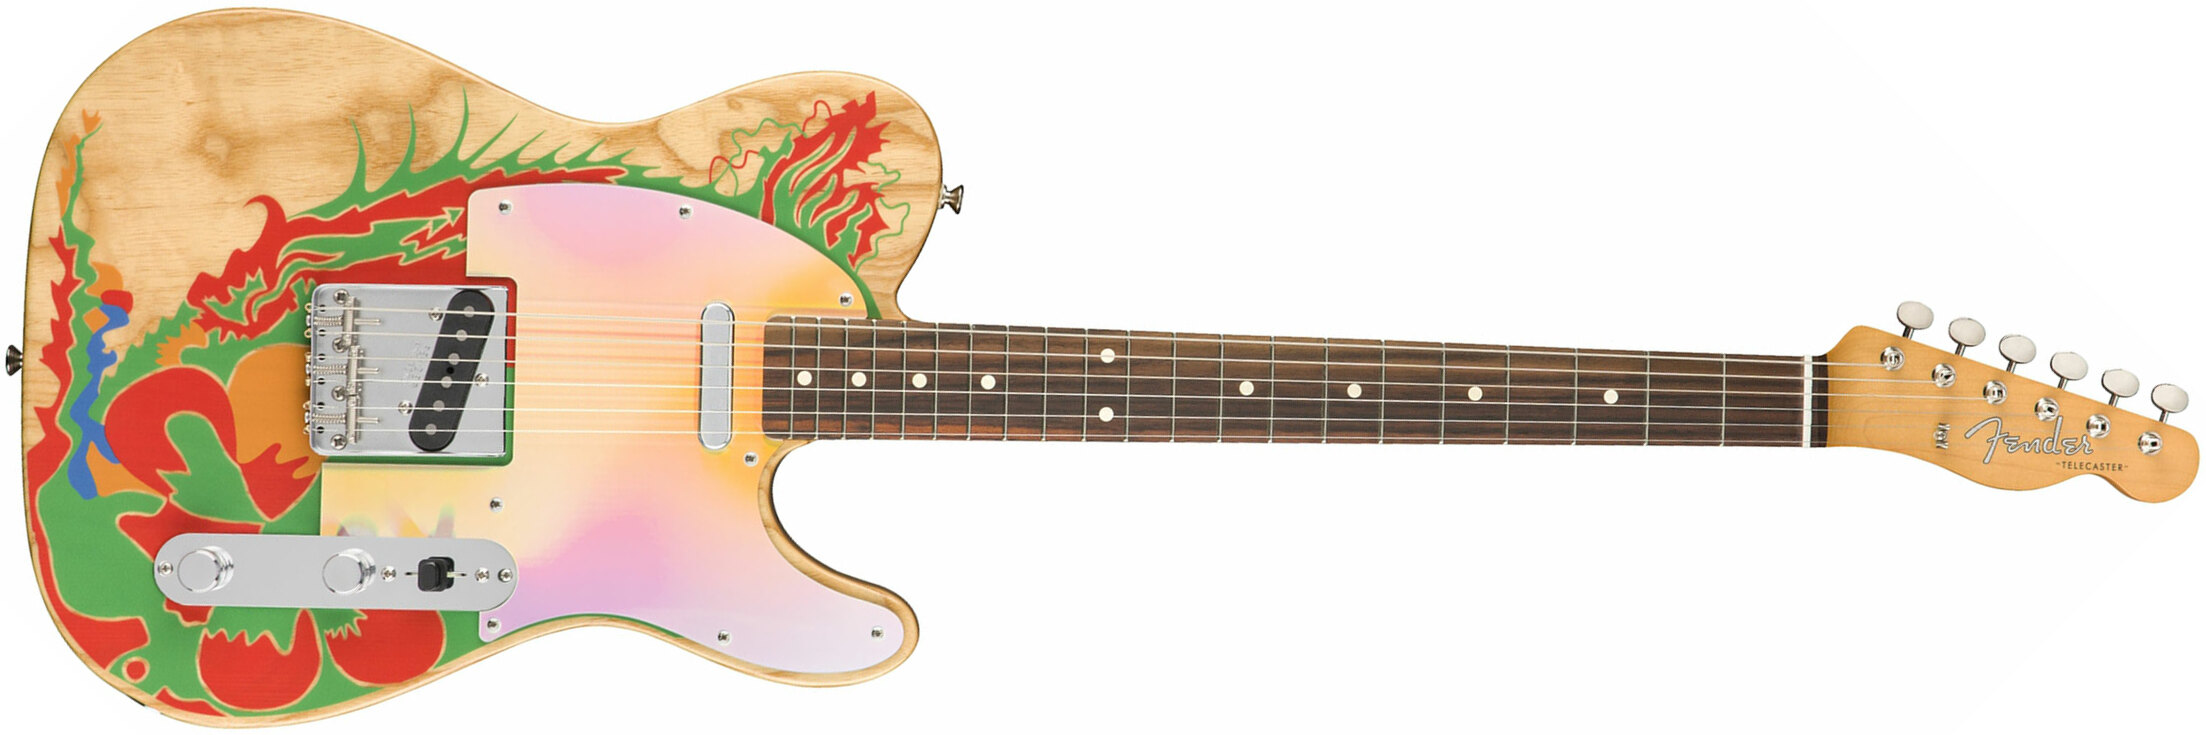 Fender Jimmy Page Tele Dragon Ltd Mex Signature Rw - Natural - E-Gitarre in Teleform - Main picture